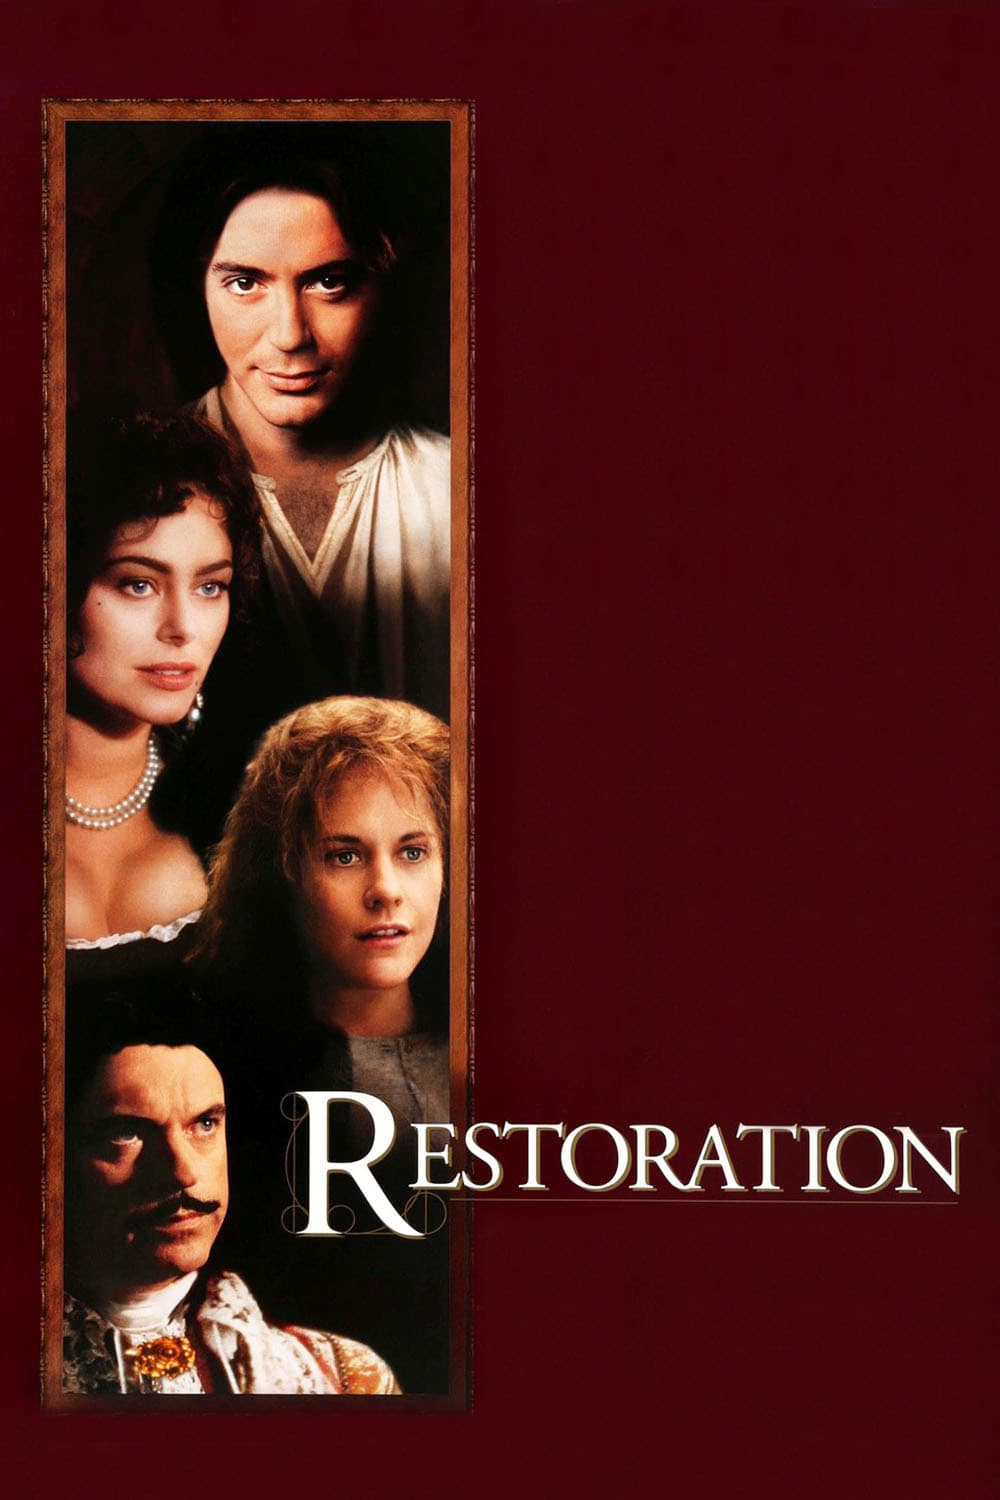 Restauración (1995)